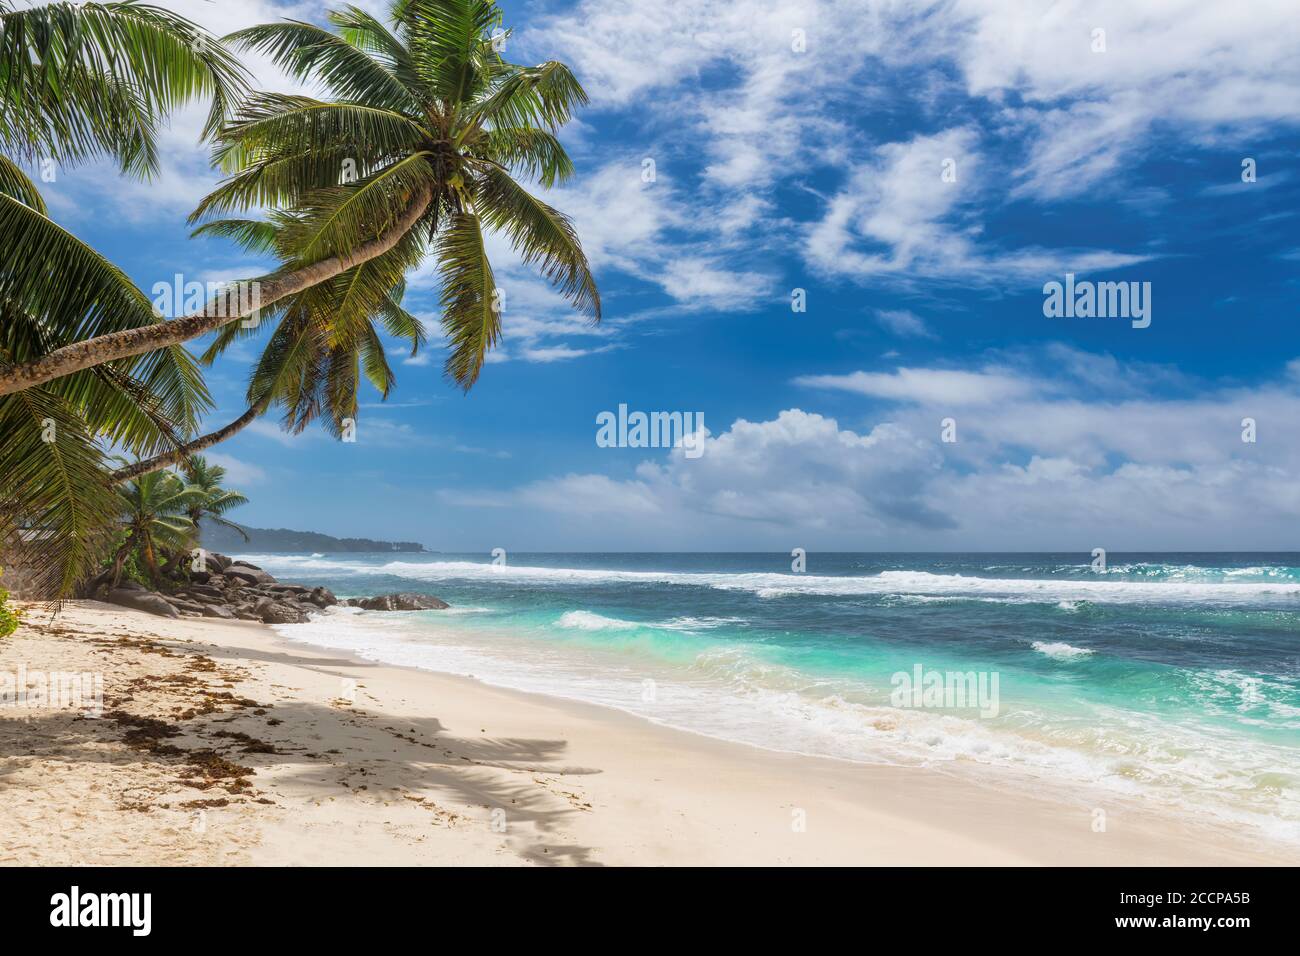 Spiaggia tropicale di sabbia bianca con palme da cocco e il mare turchese sull'isola Paradise. Foto Stock